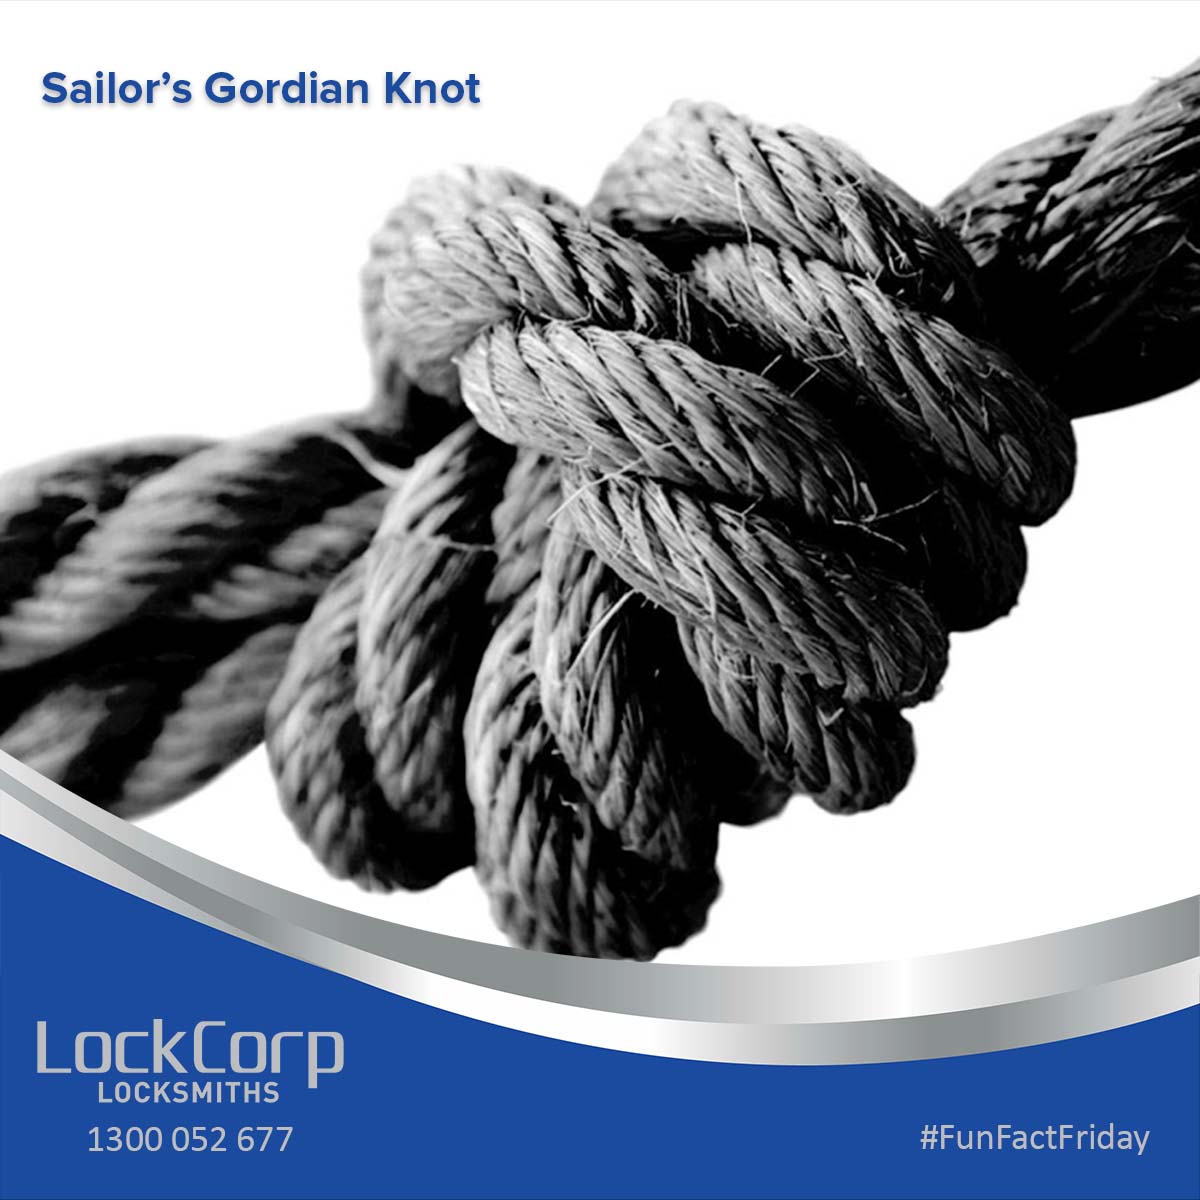 Sailor's Gordian Knot